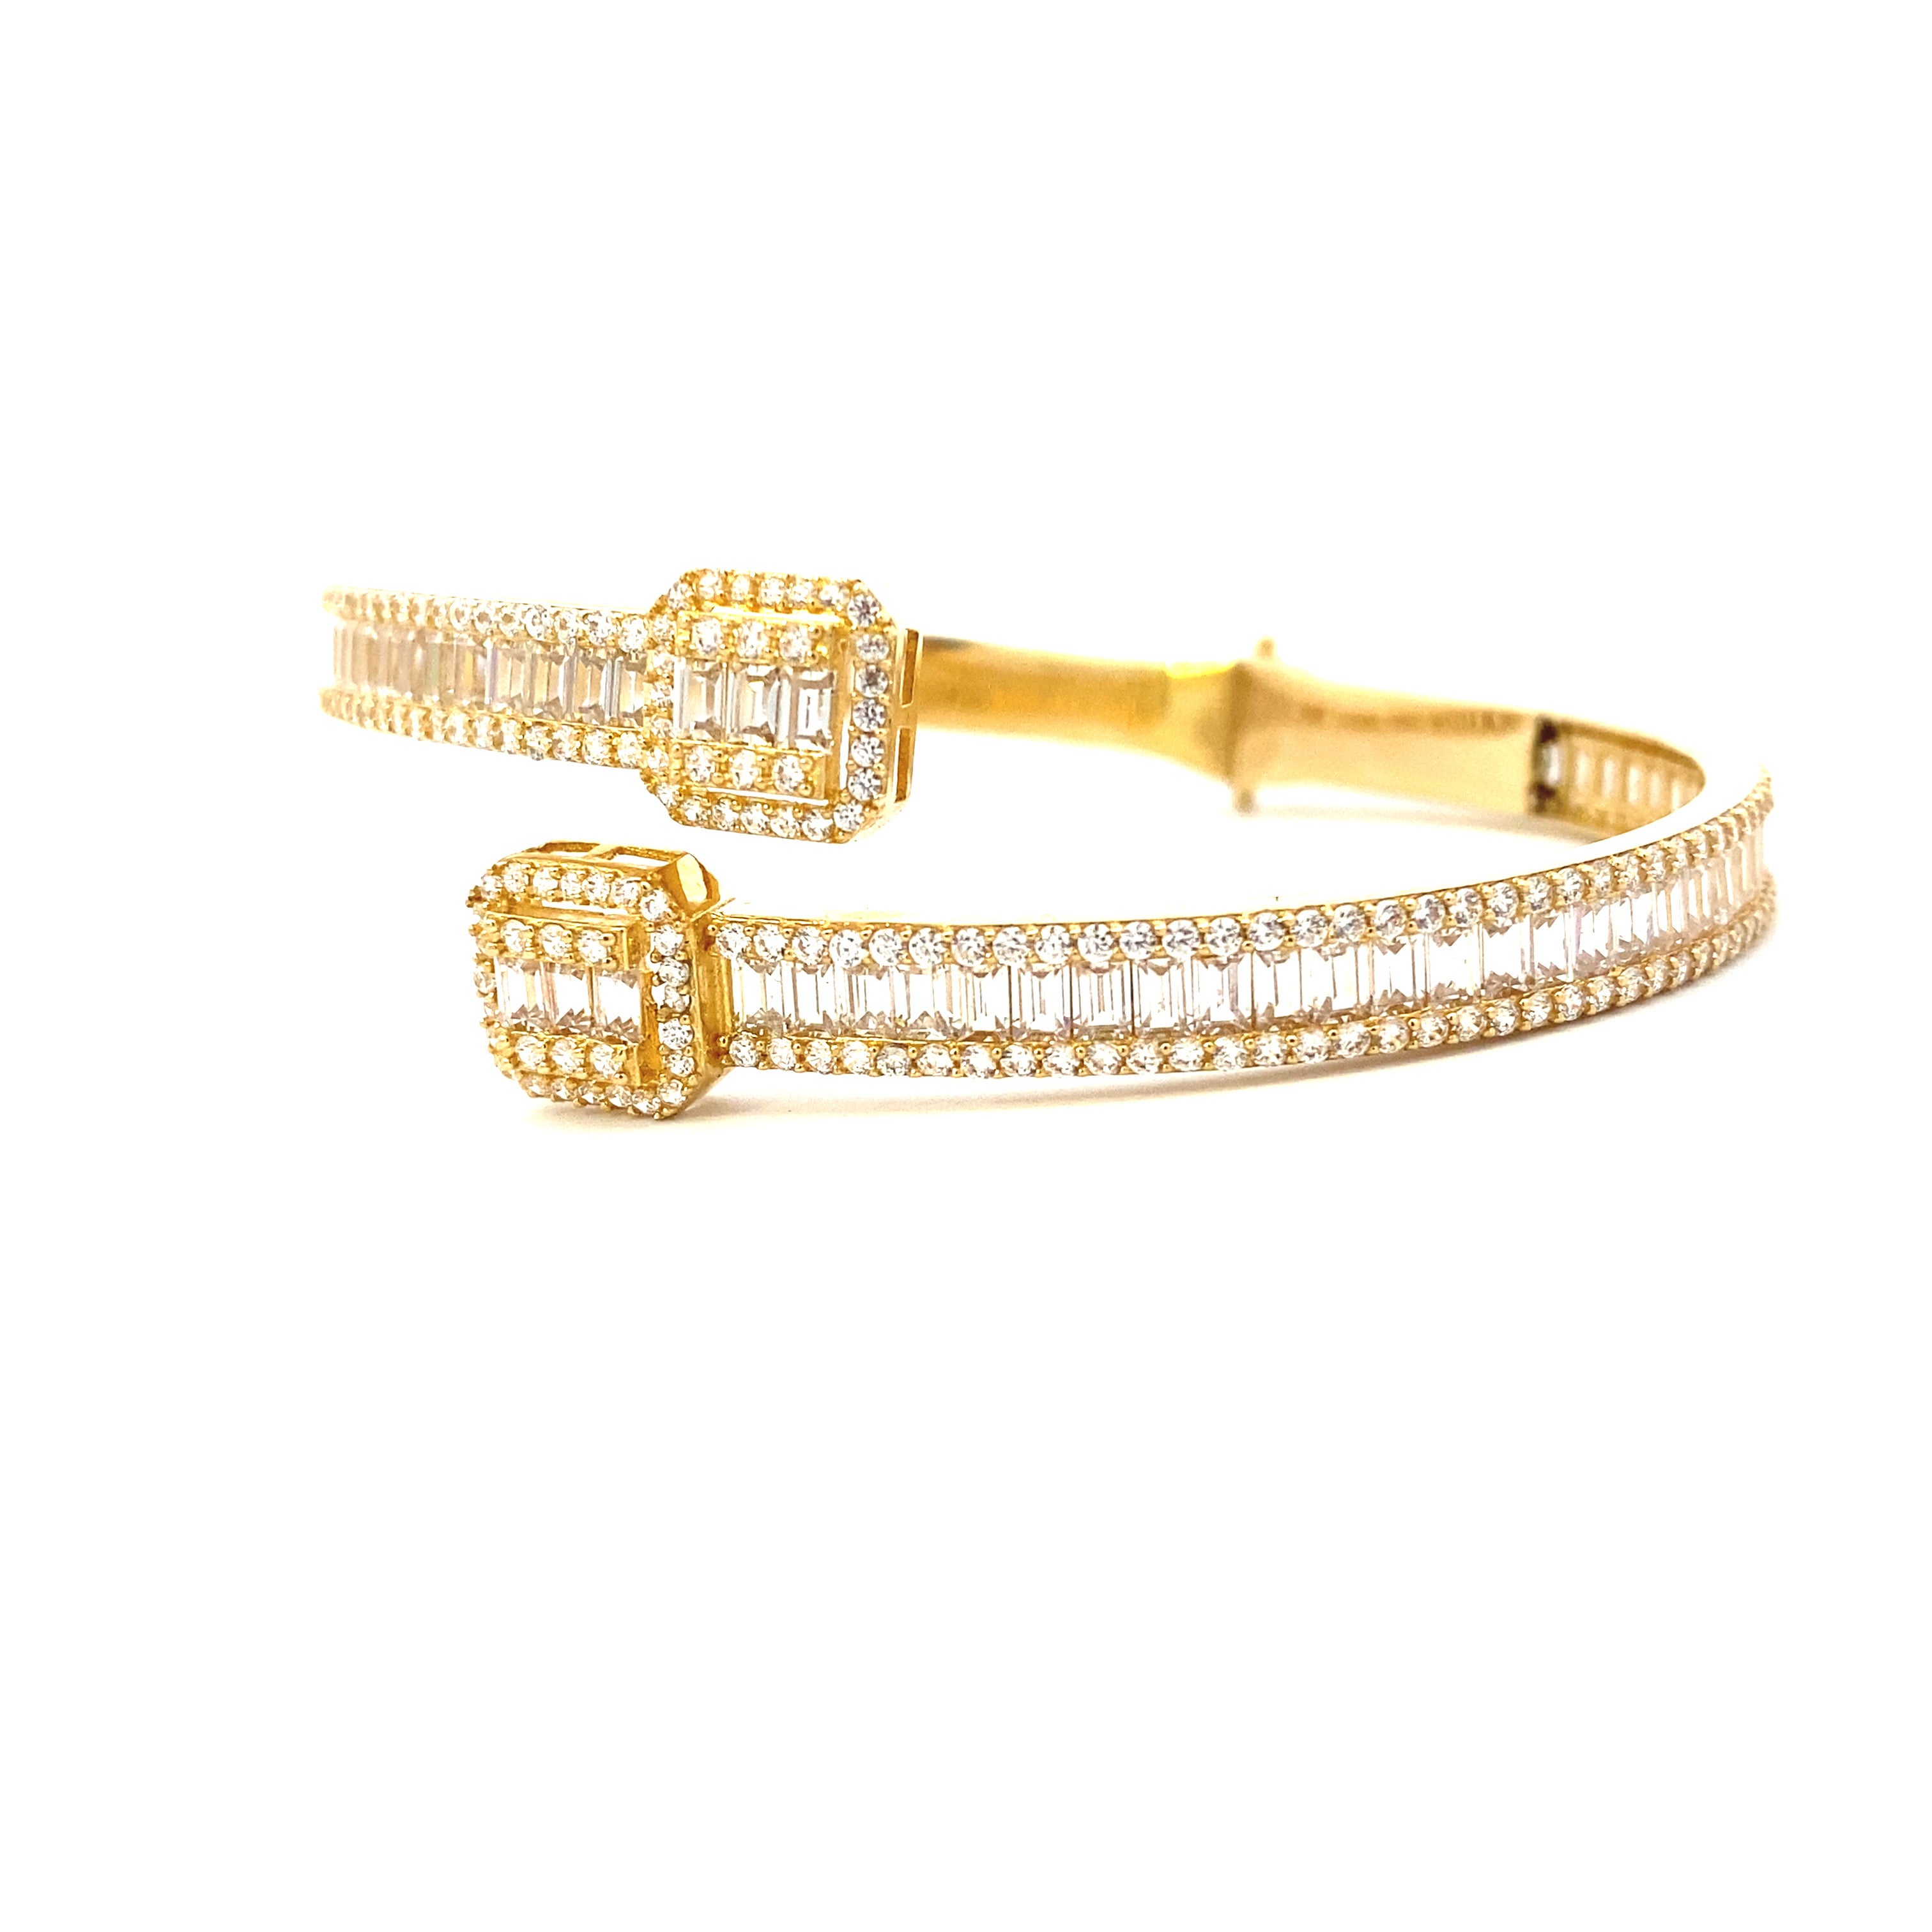 Bling Bangle Bracelet 10K Gold